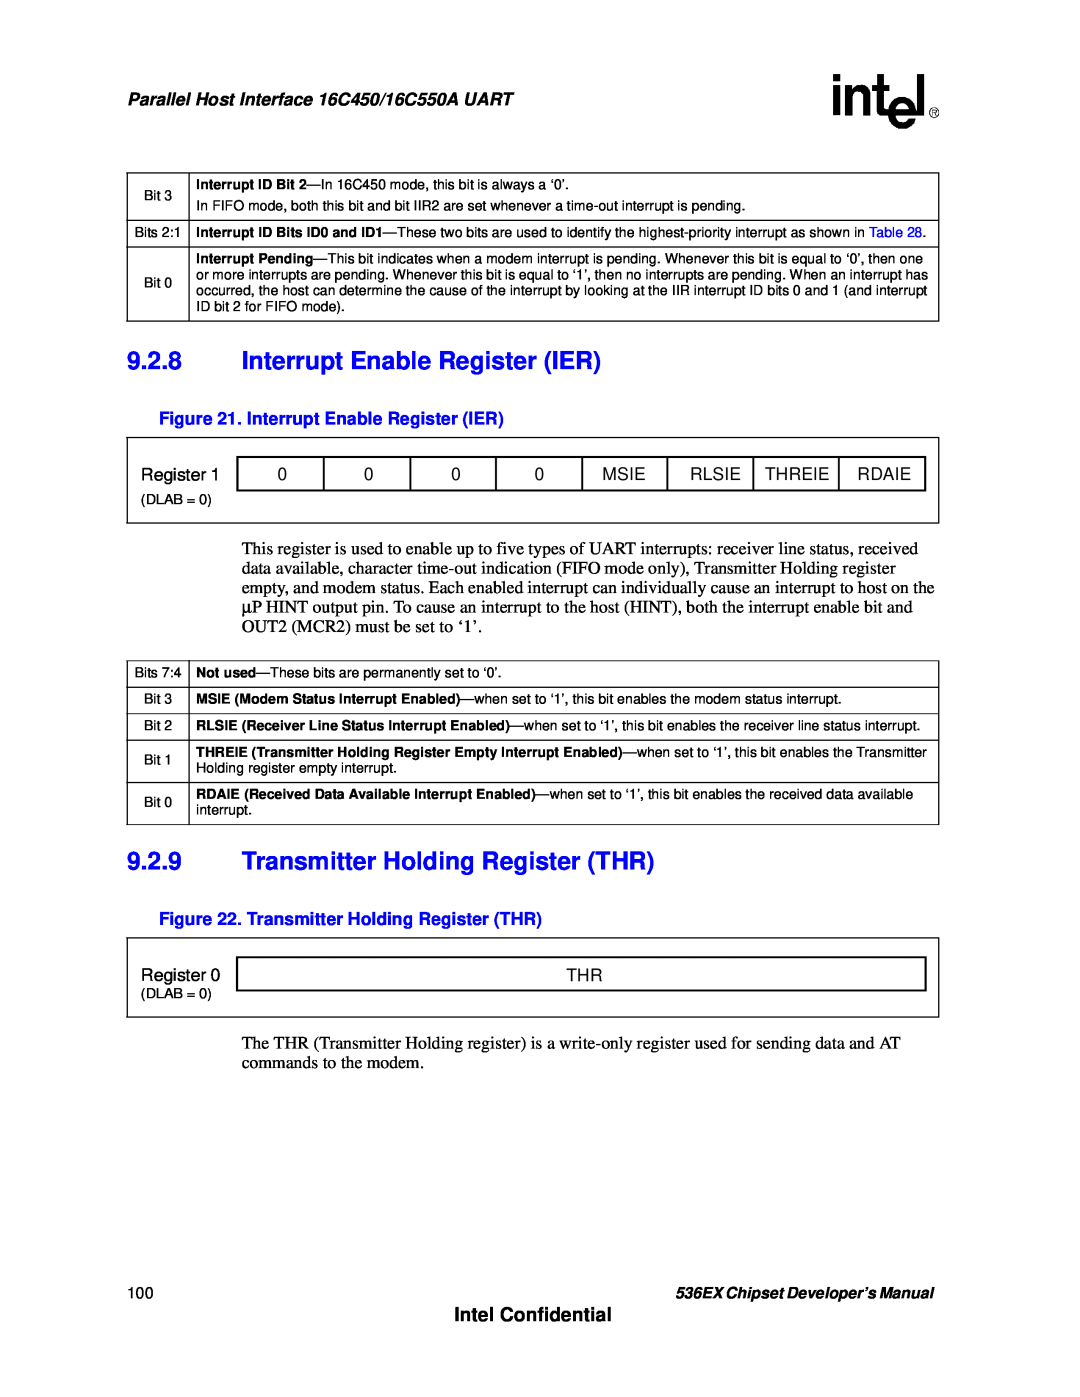 Intel 536EX manual 9.2.8Interrupt Enable Register IER, 9.2.9Transmitter Holding Register THR, Intel Confidential 